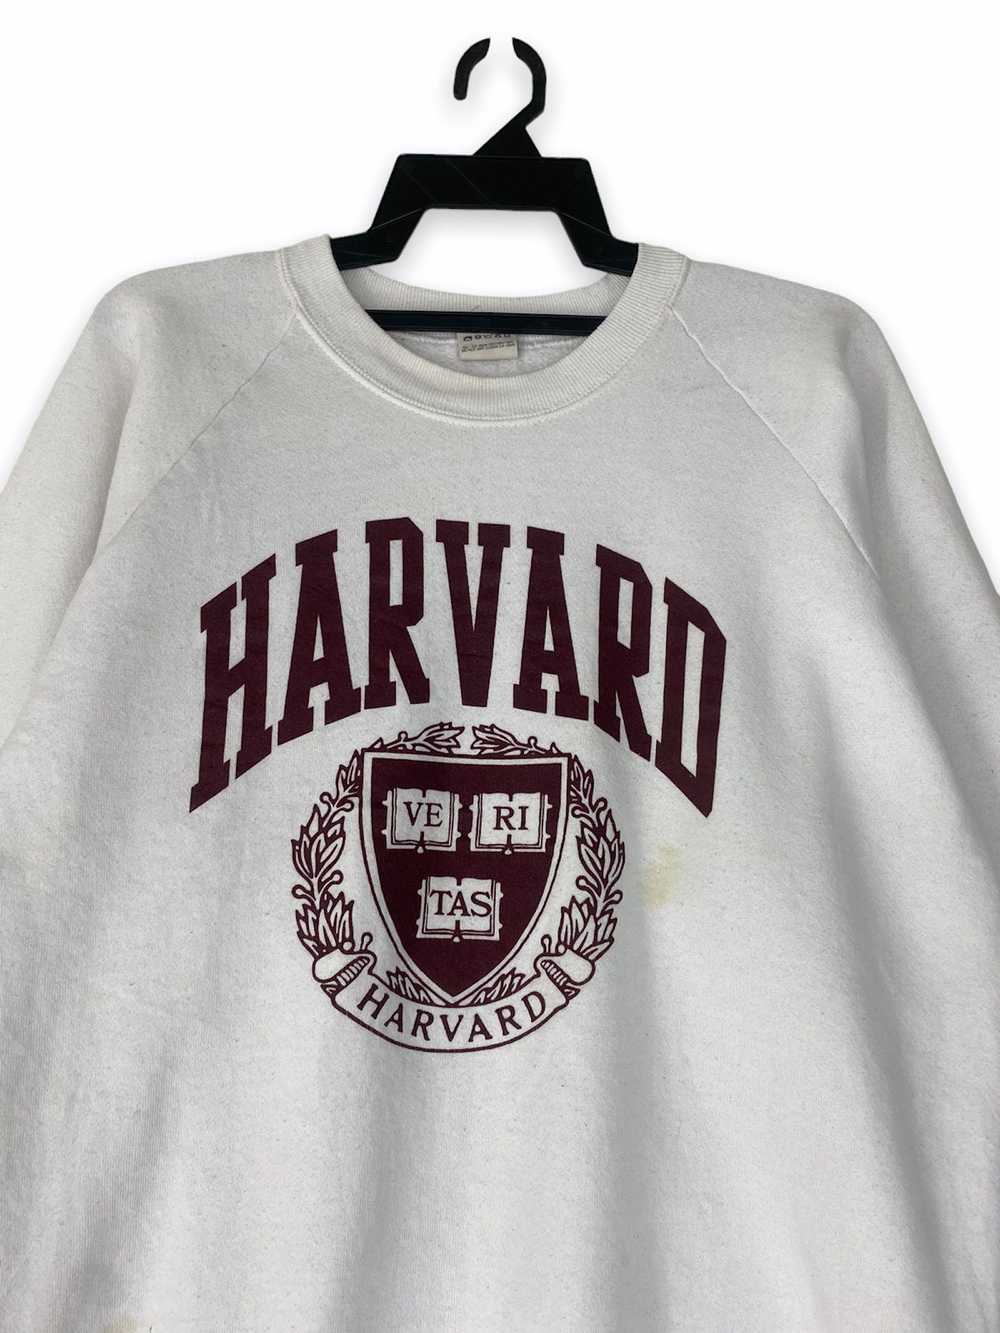 Harvard × Vintage Vintage rare Harvard University - image 3